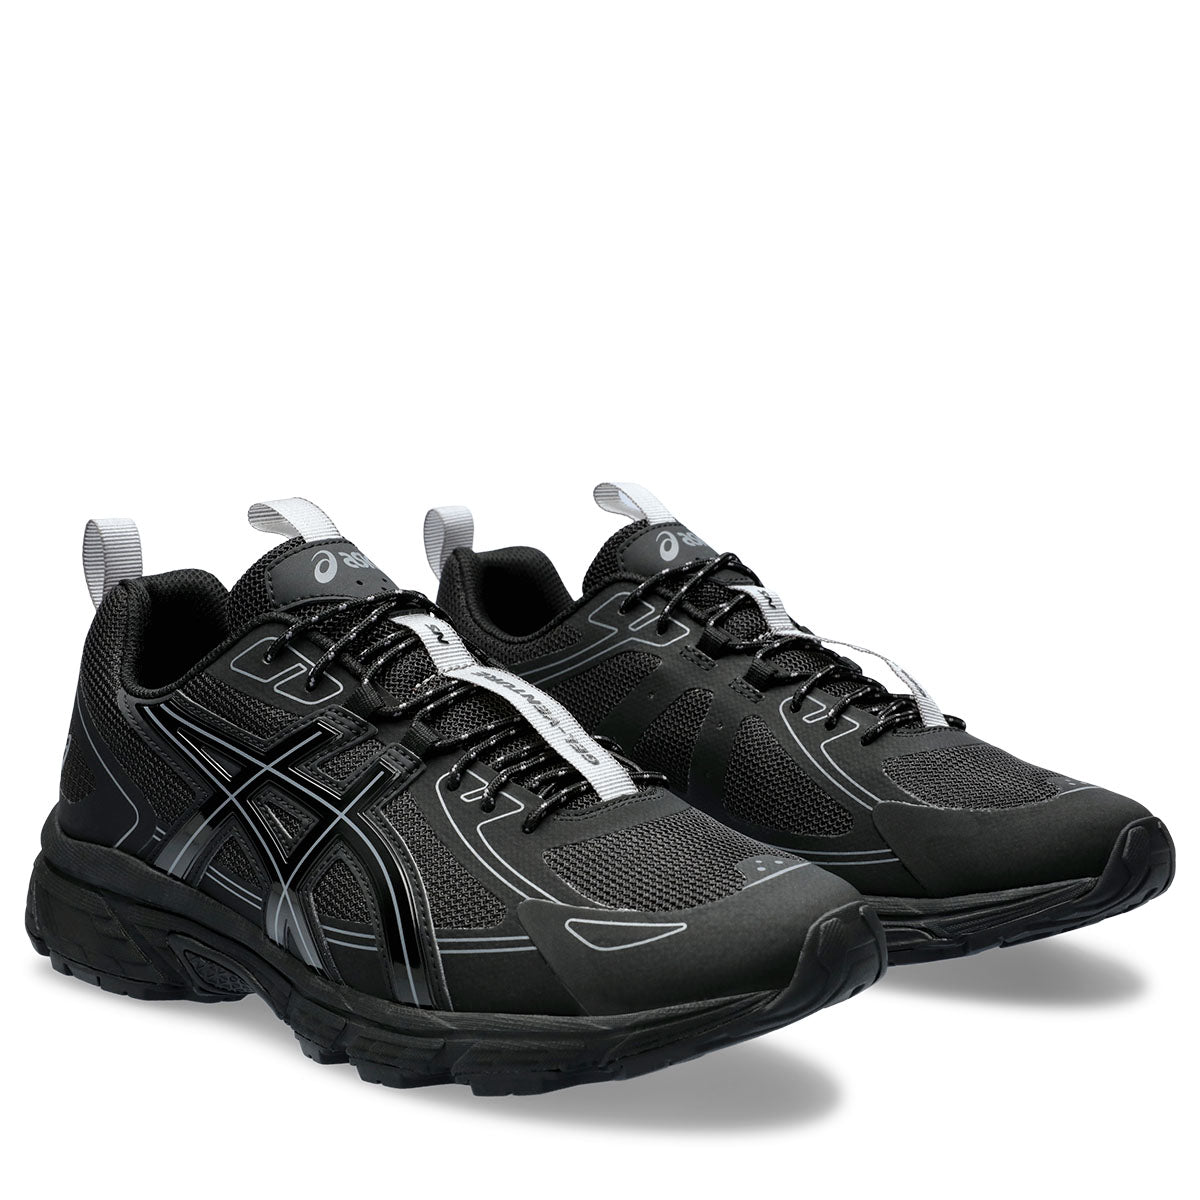 Asics Gel Venture 6 NS Men Black נעלי אסיקס לגברים ג'ל ונטור